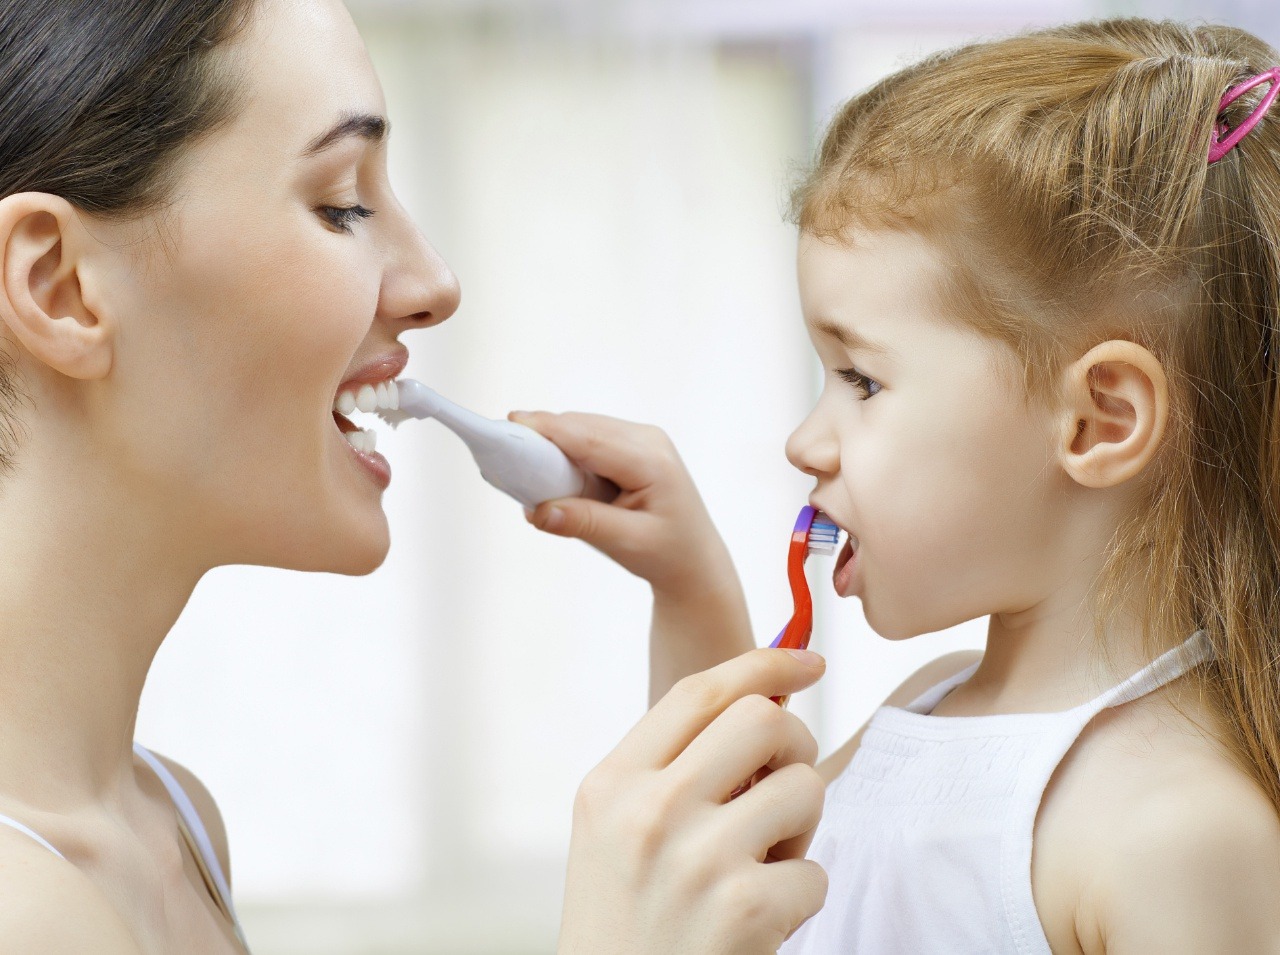 Čistenie zubov má svoje zákonitosti, ktoré by sme vzhľadom k vlastnému zdraviu mali dodržiavať. 